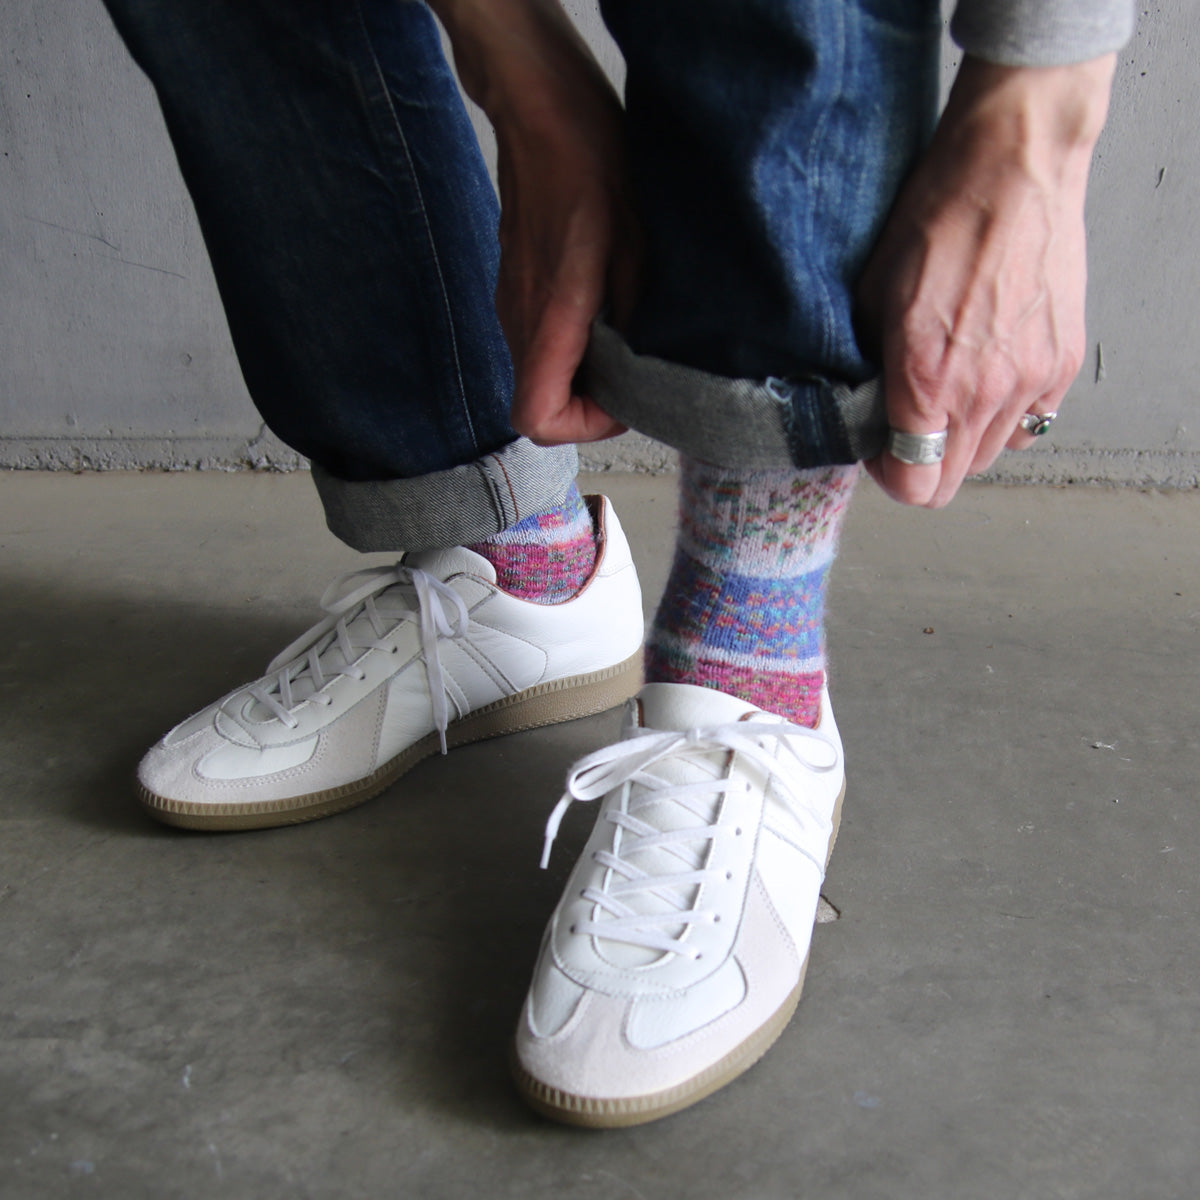 ラナート (LANART) 米国製ベビーアルパカソックス靴下 Artistic Baby Alpaca Socks[DEGAS/DENIM]